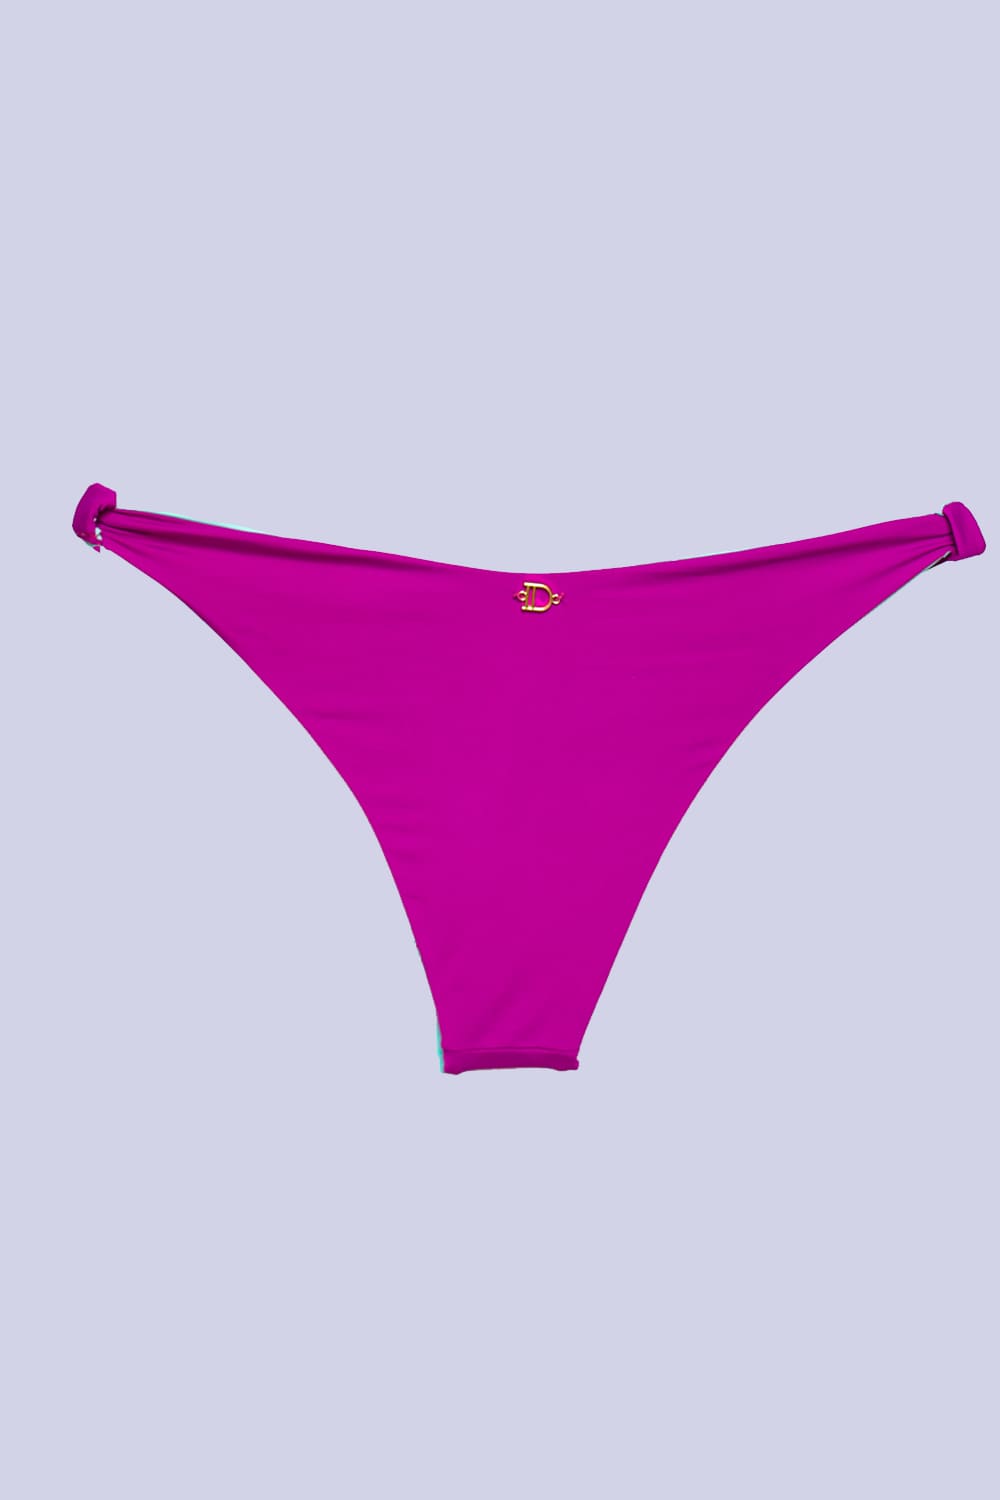 tanga de bikini en la espalda con el icono de la marca IDswimwear